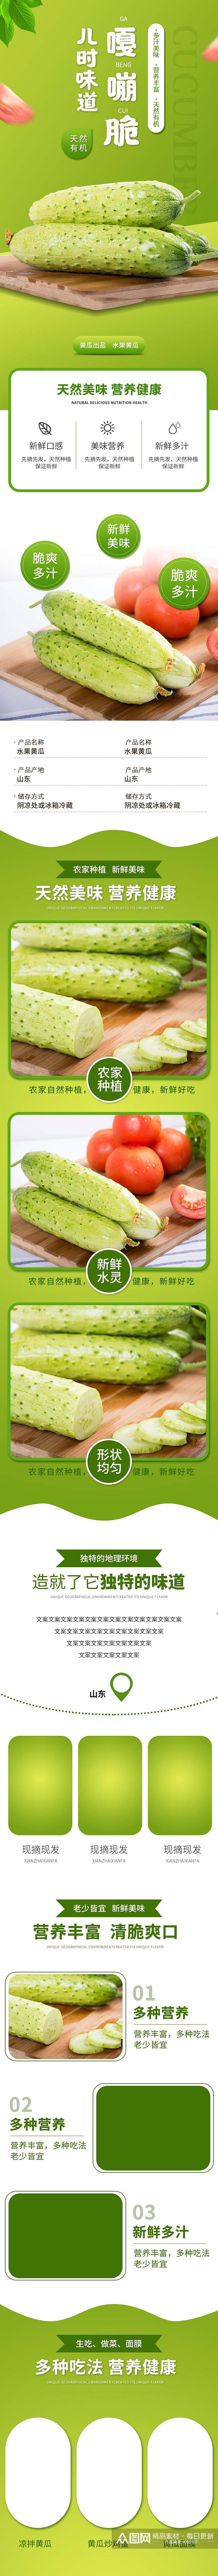 黄瓜蔬菜手机版详情页素材